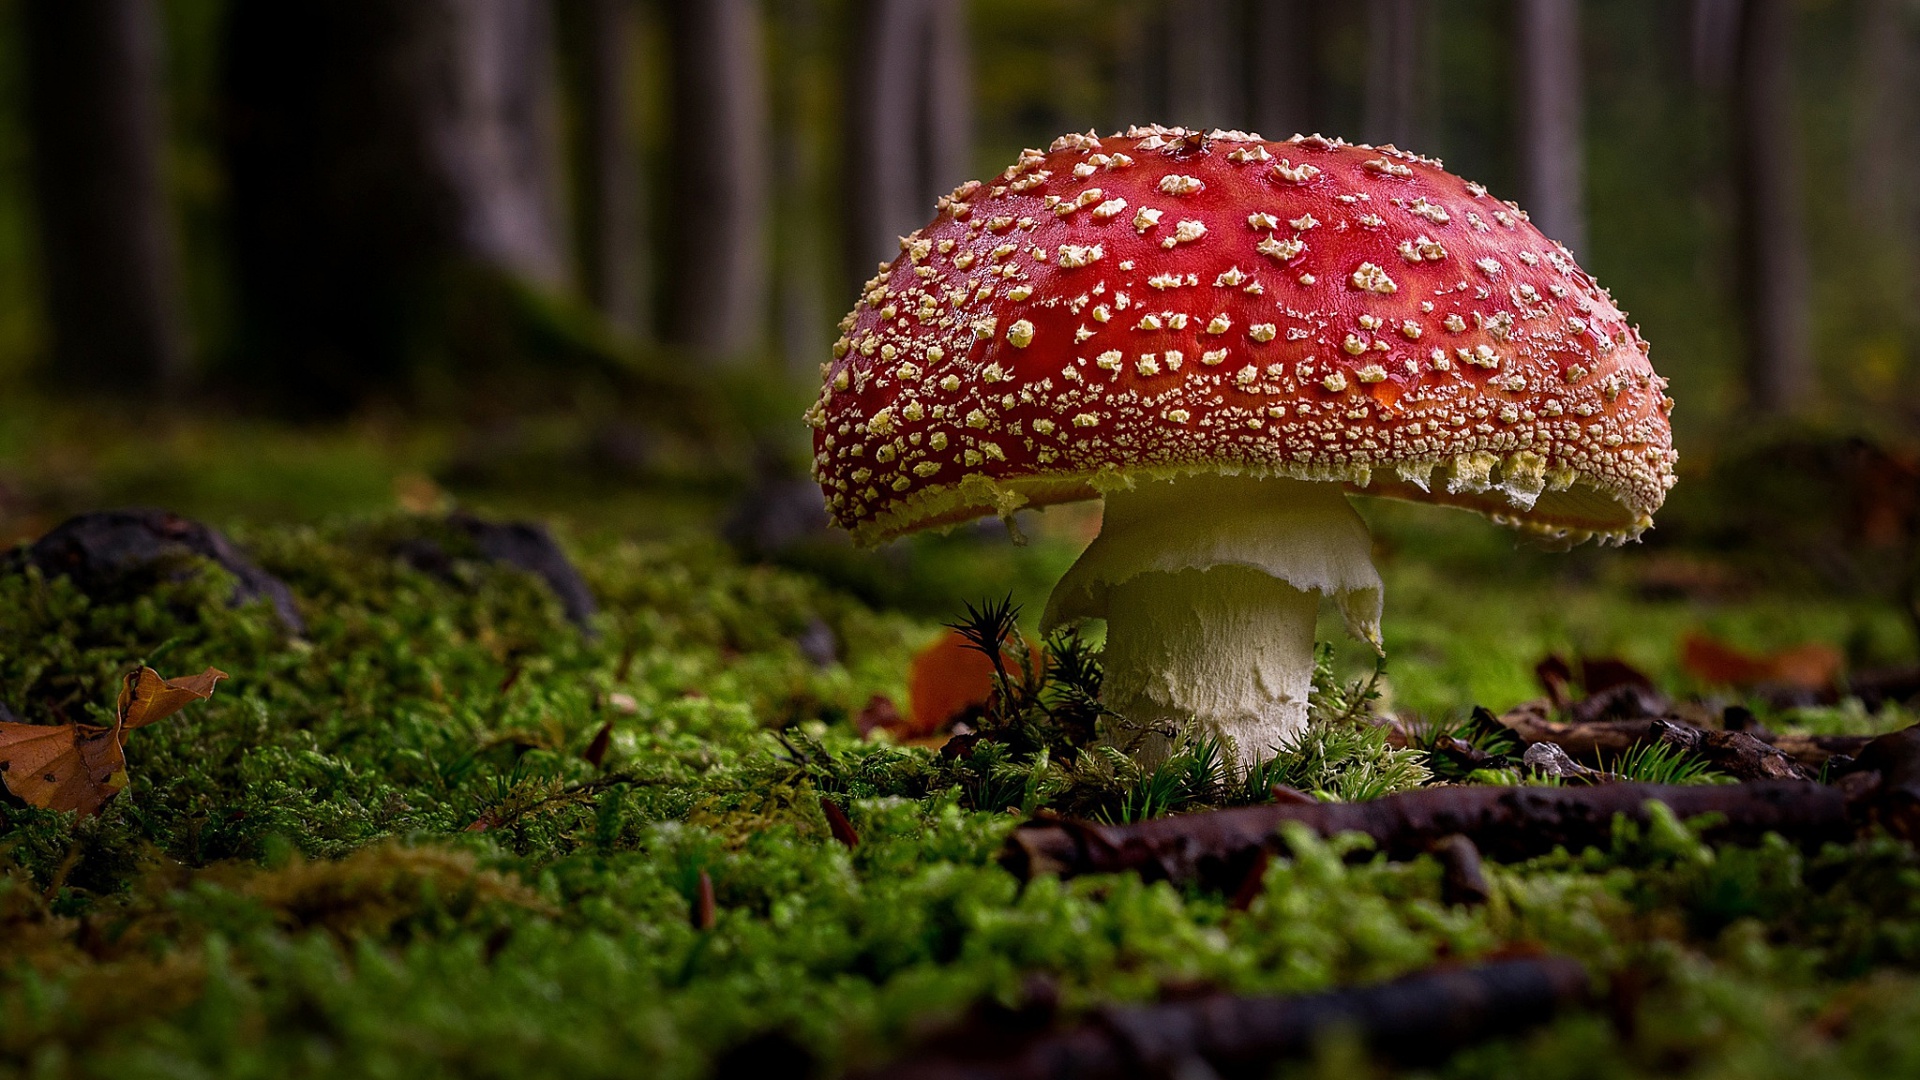 تصویر جذاب از قارچ کچولو در وسط جنگل انبوه مخصوص تصویر دسکتاپ 